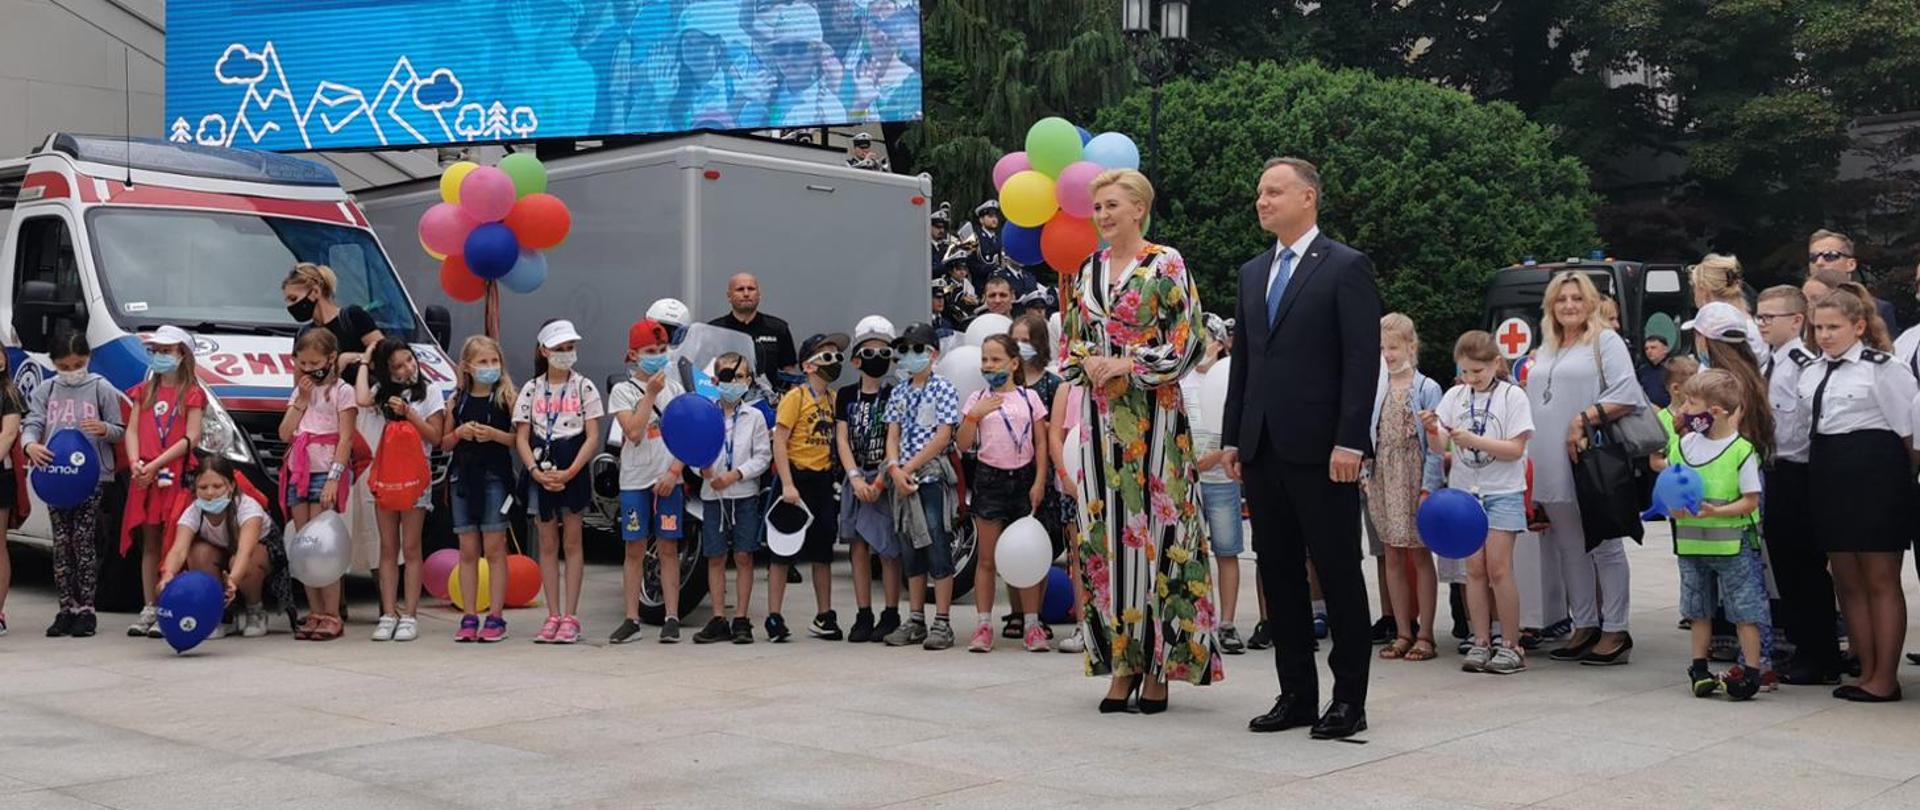 Para Prezydencka w Biurze Bezpieczeństwa Narodowego podczas pikniku "Bezpieczne Wakacje z Parą Prezydencką". W tle grupa dzieci i balony.